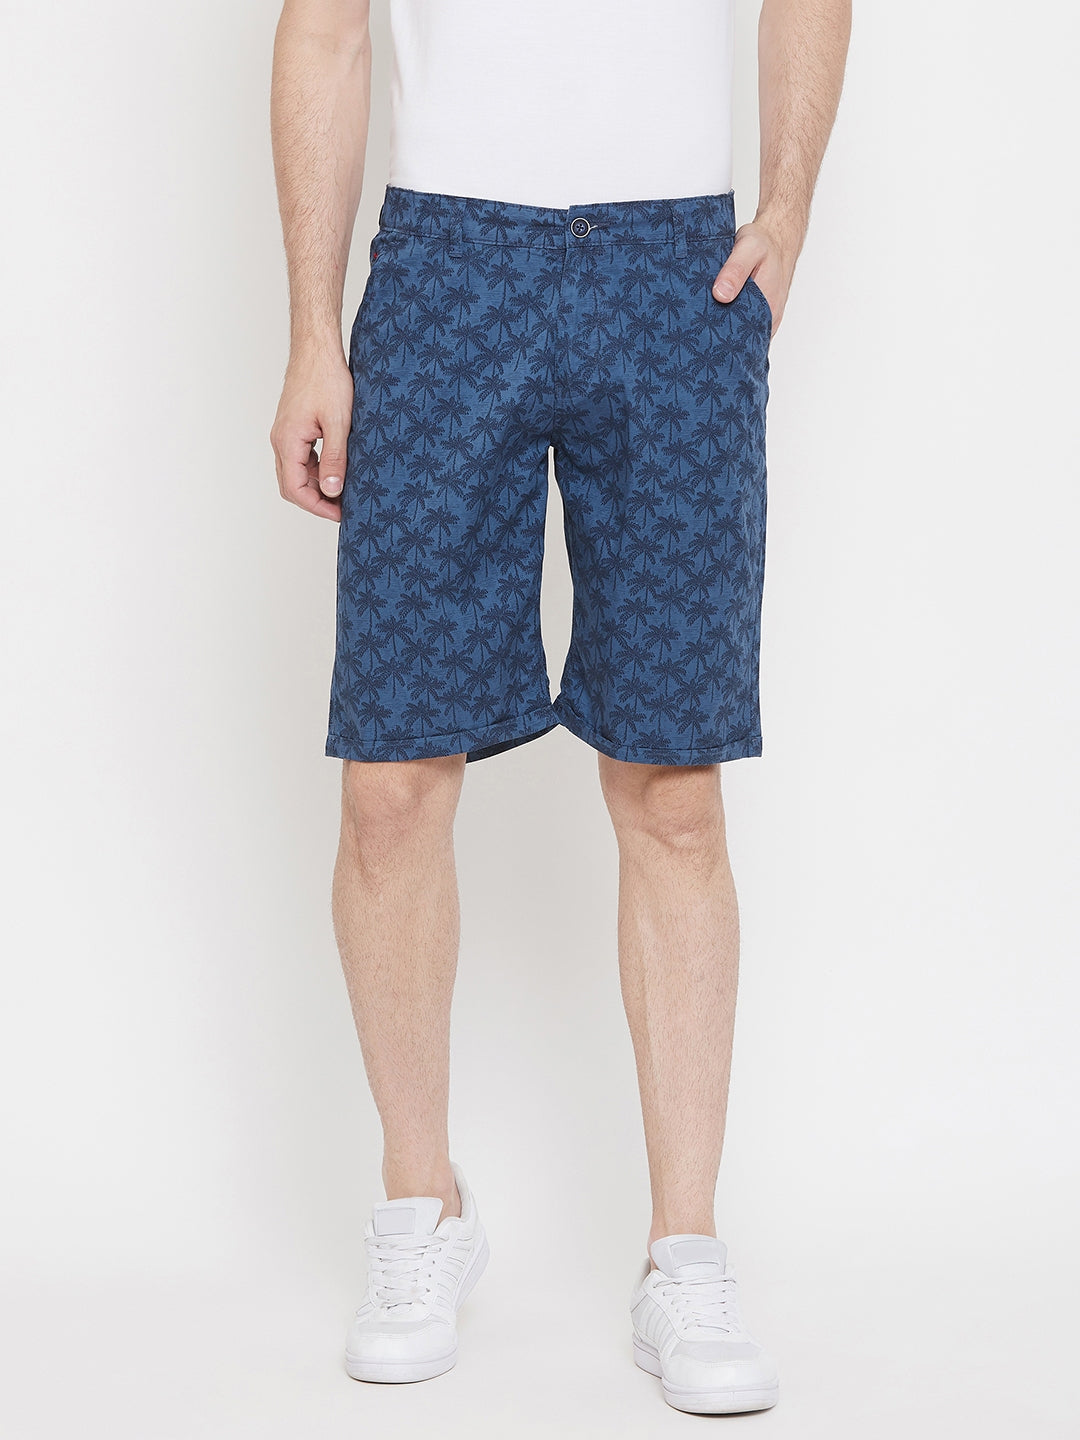 Blue Printed shorts - Men Shorts